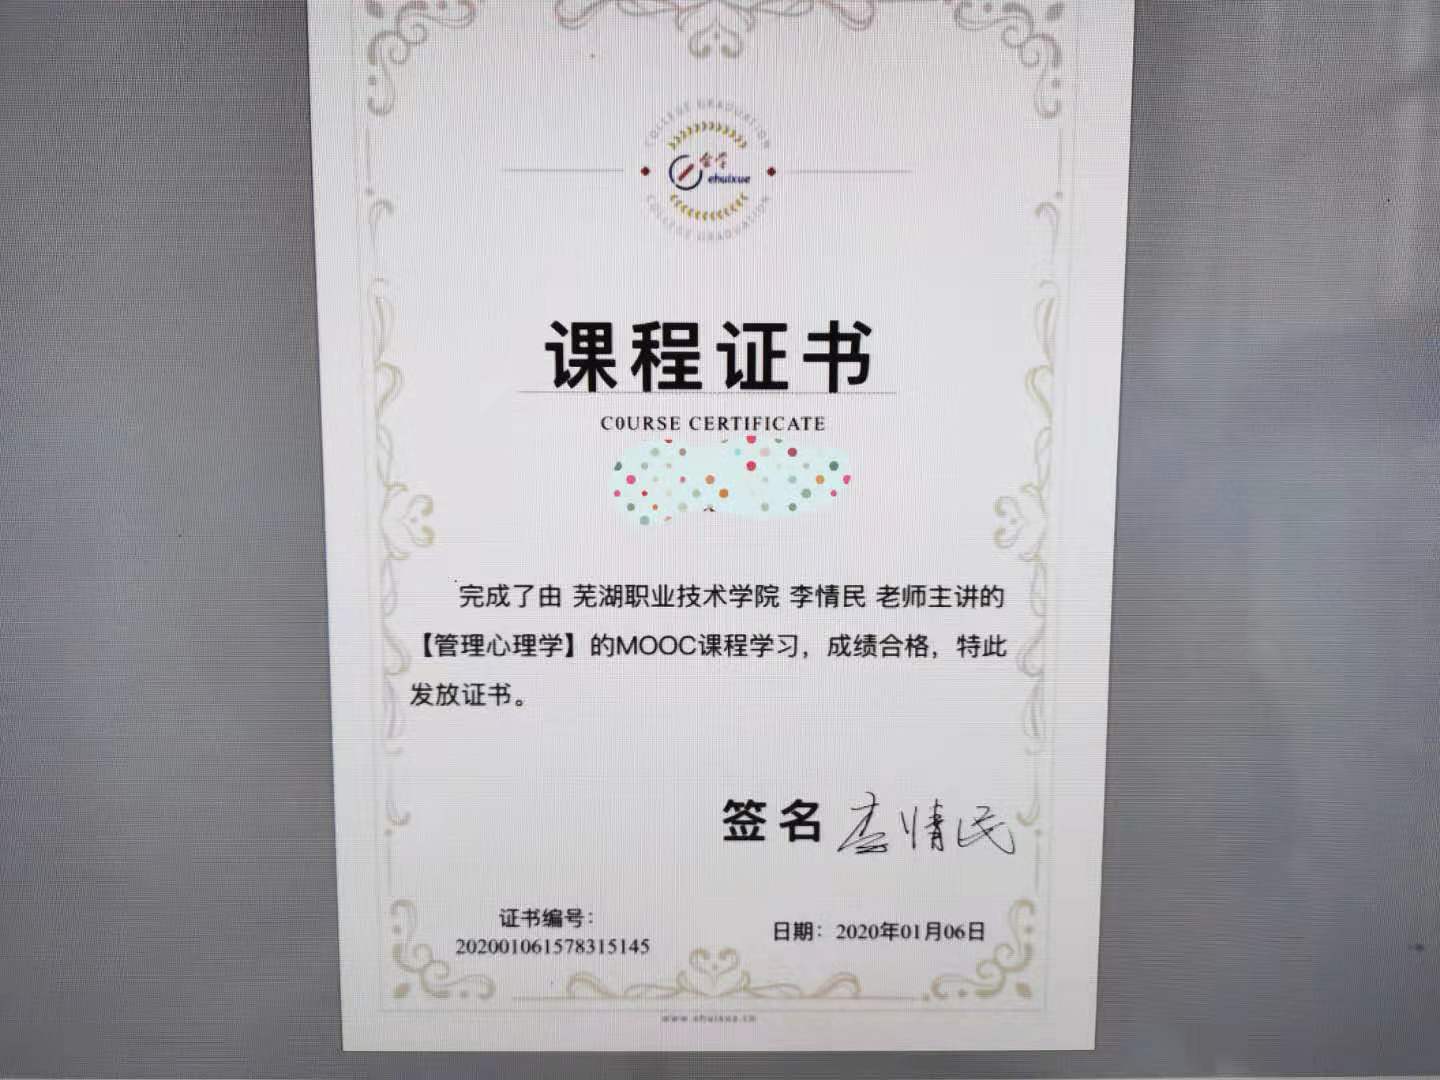 中国大学慕课证书图片